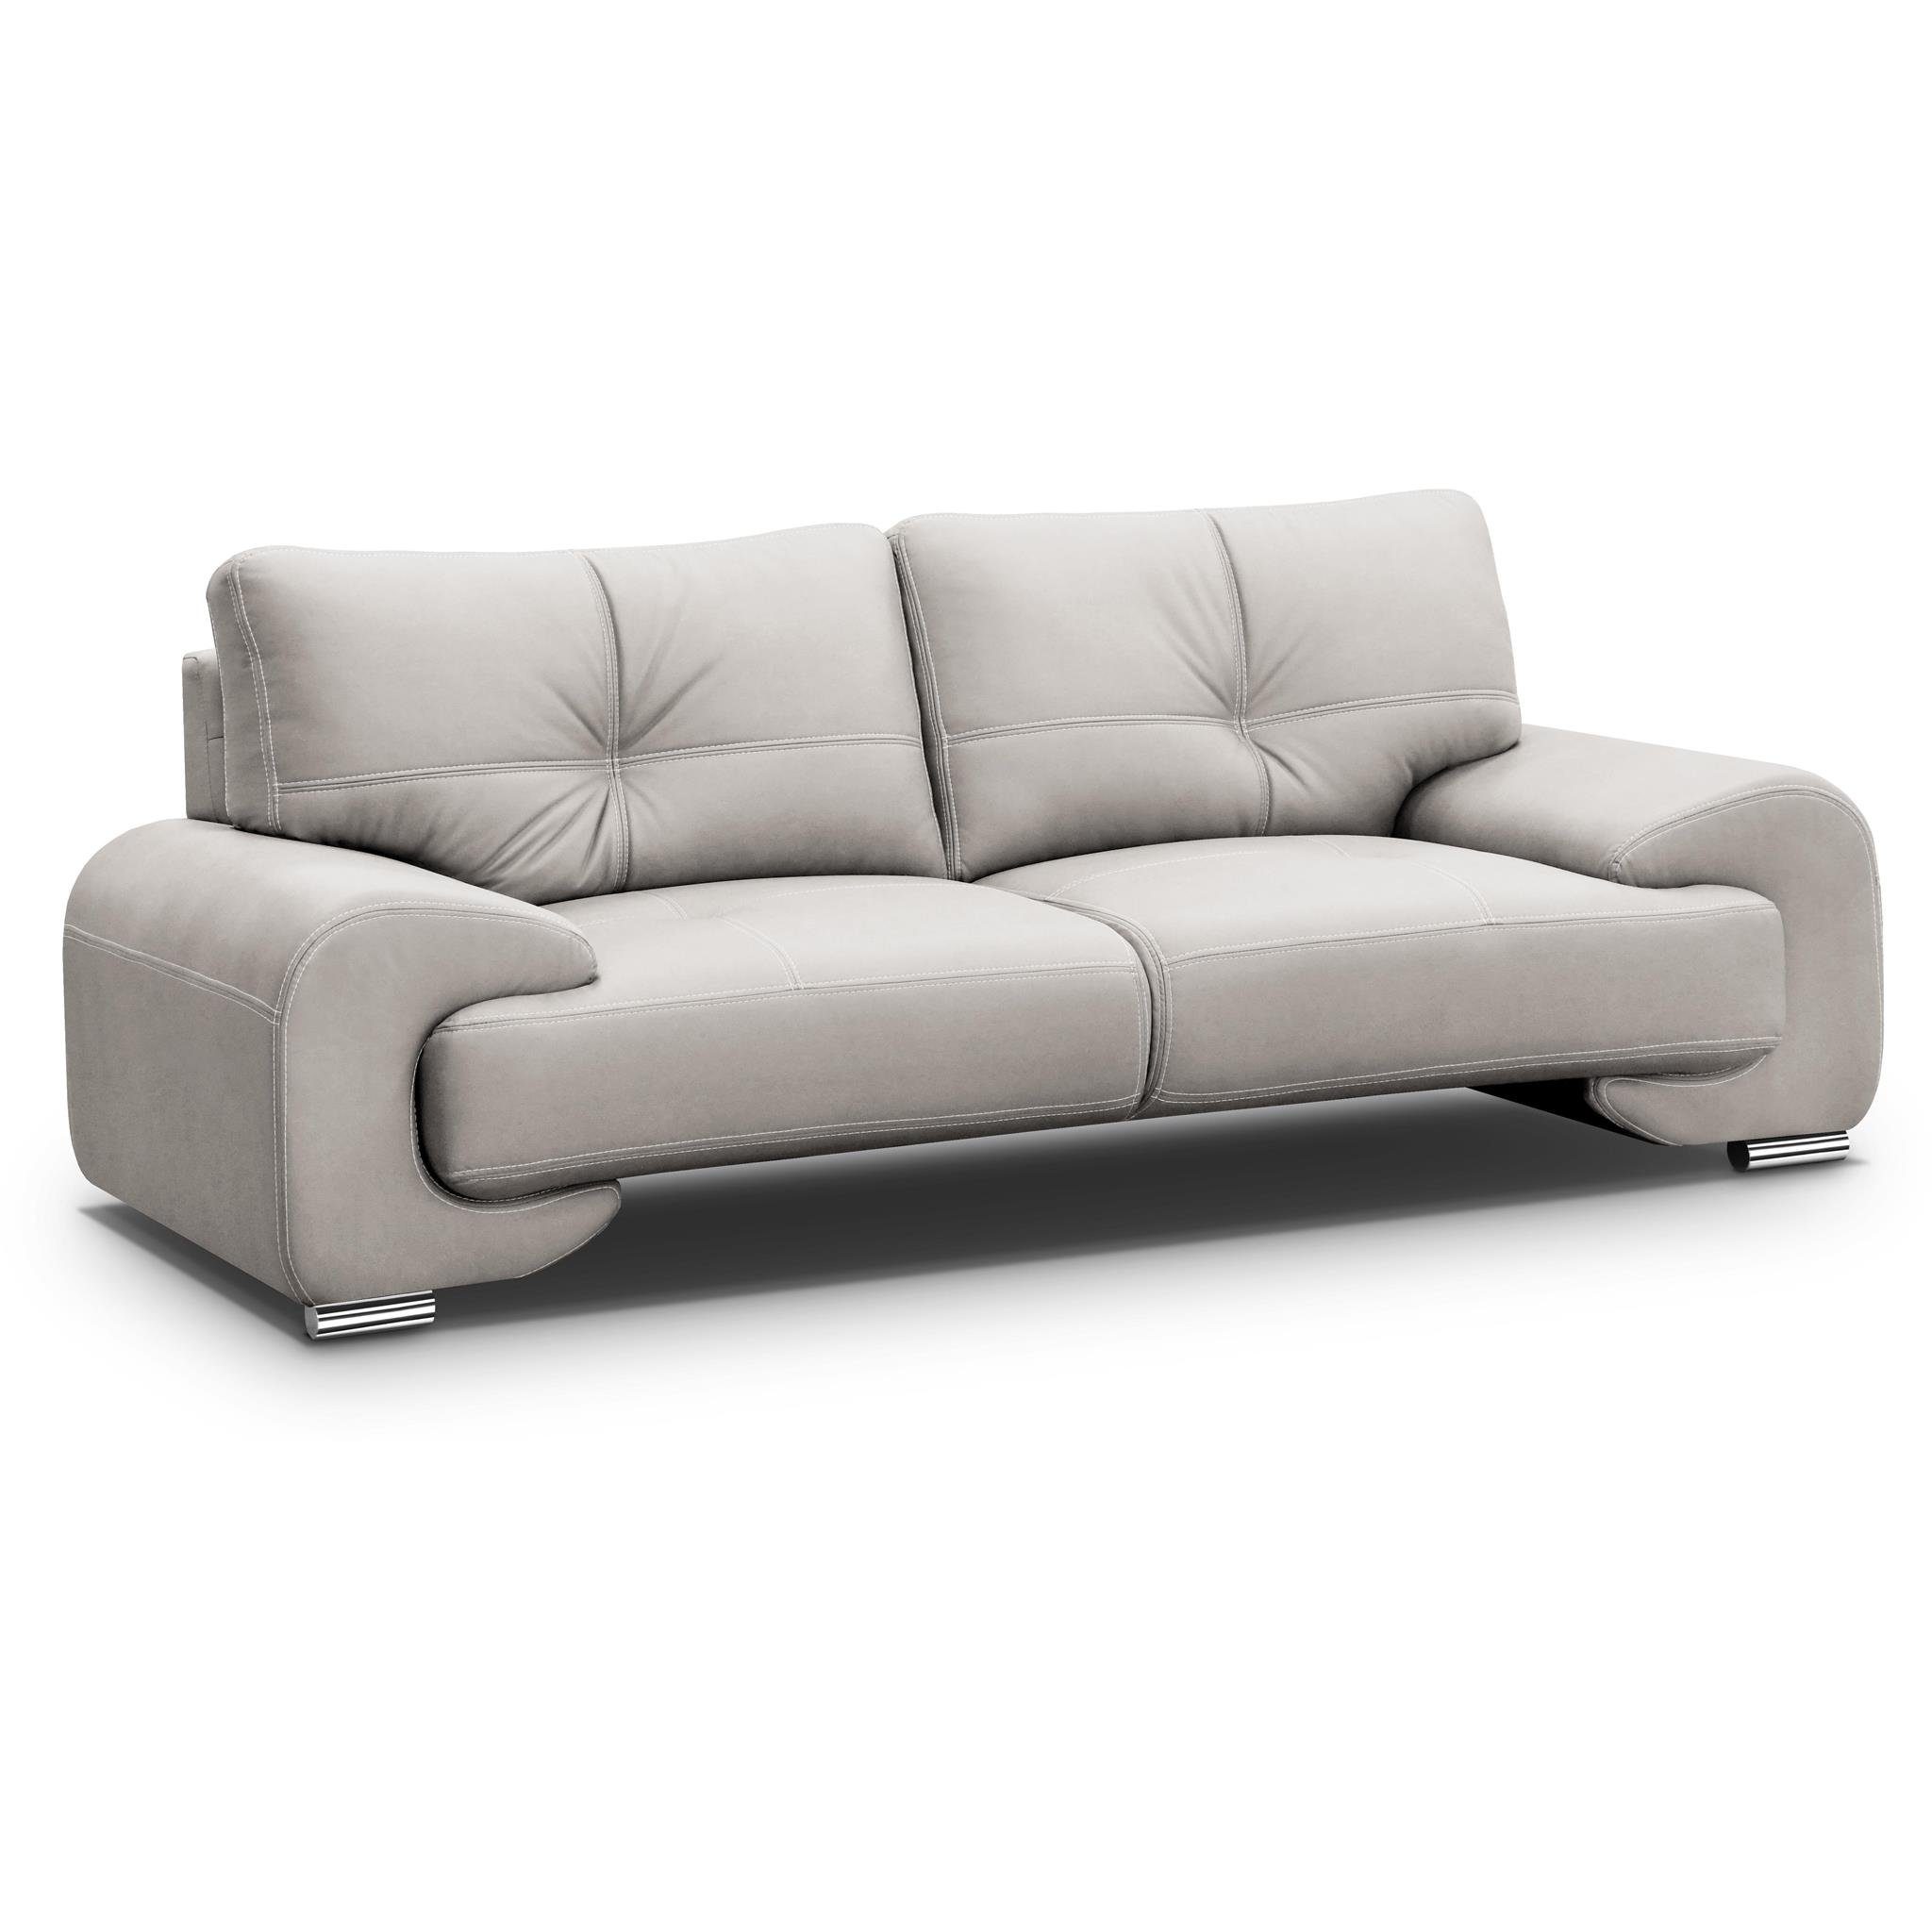 Beautysofa 3-Sitzer Maxime lux, 3-Sitzer Sofa im modernes Design, mit Wellenunterfederung, mit dekorativen Nähten, Kunstleder, Dreisitzer Beige (vega 02)